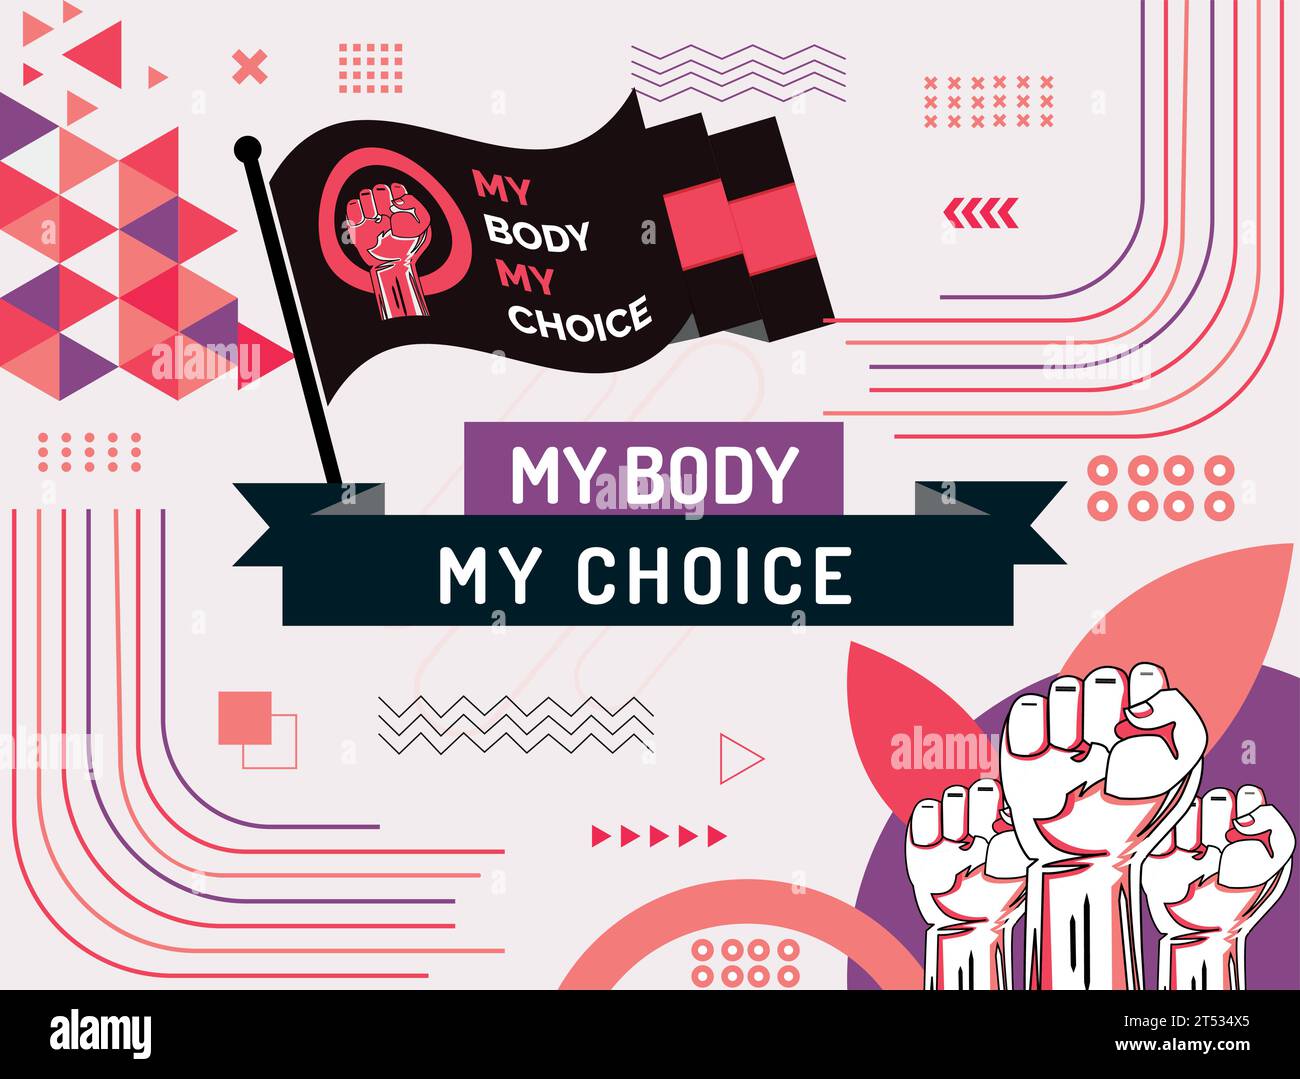 My Body My Choice Slogan. Slogan für Protestplakat nach dem Verbot von Abtreibungen Klinikbanner zur Unterstützung der Frauenbefähigung. Feminismus-Konzept-Plakette. Stock Vektor